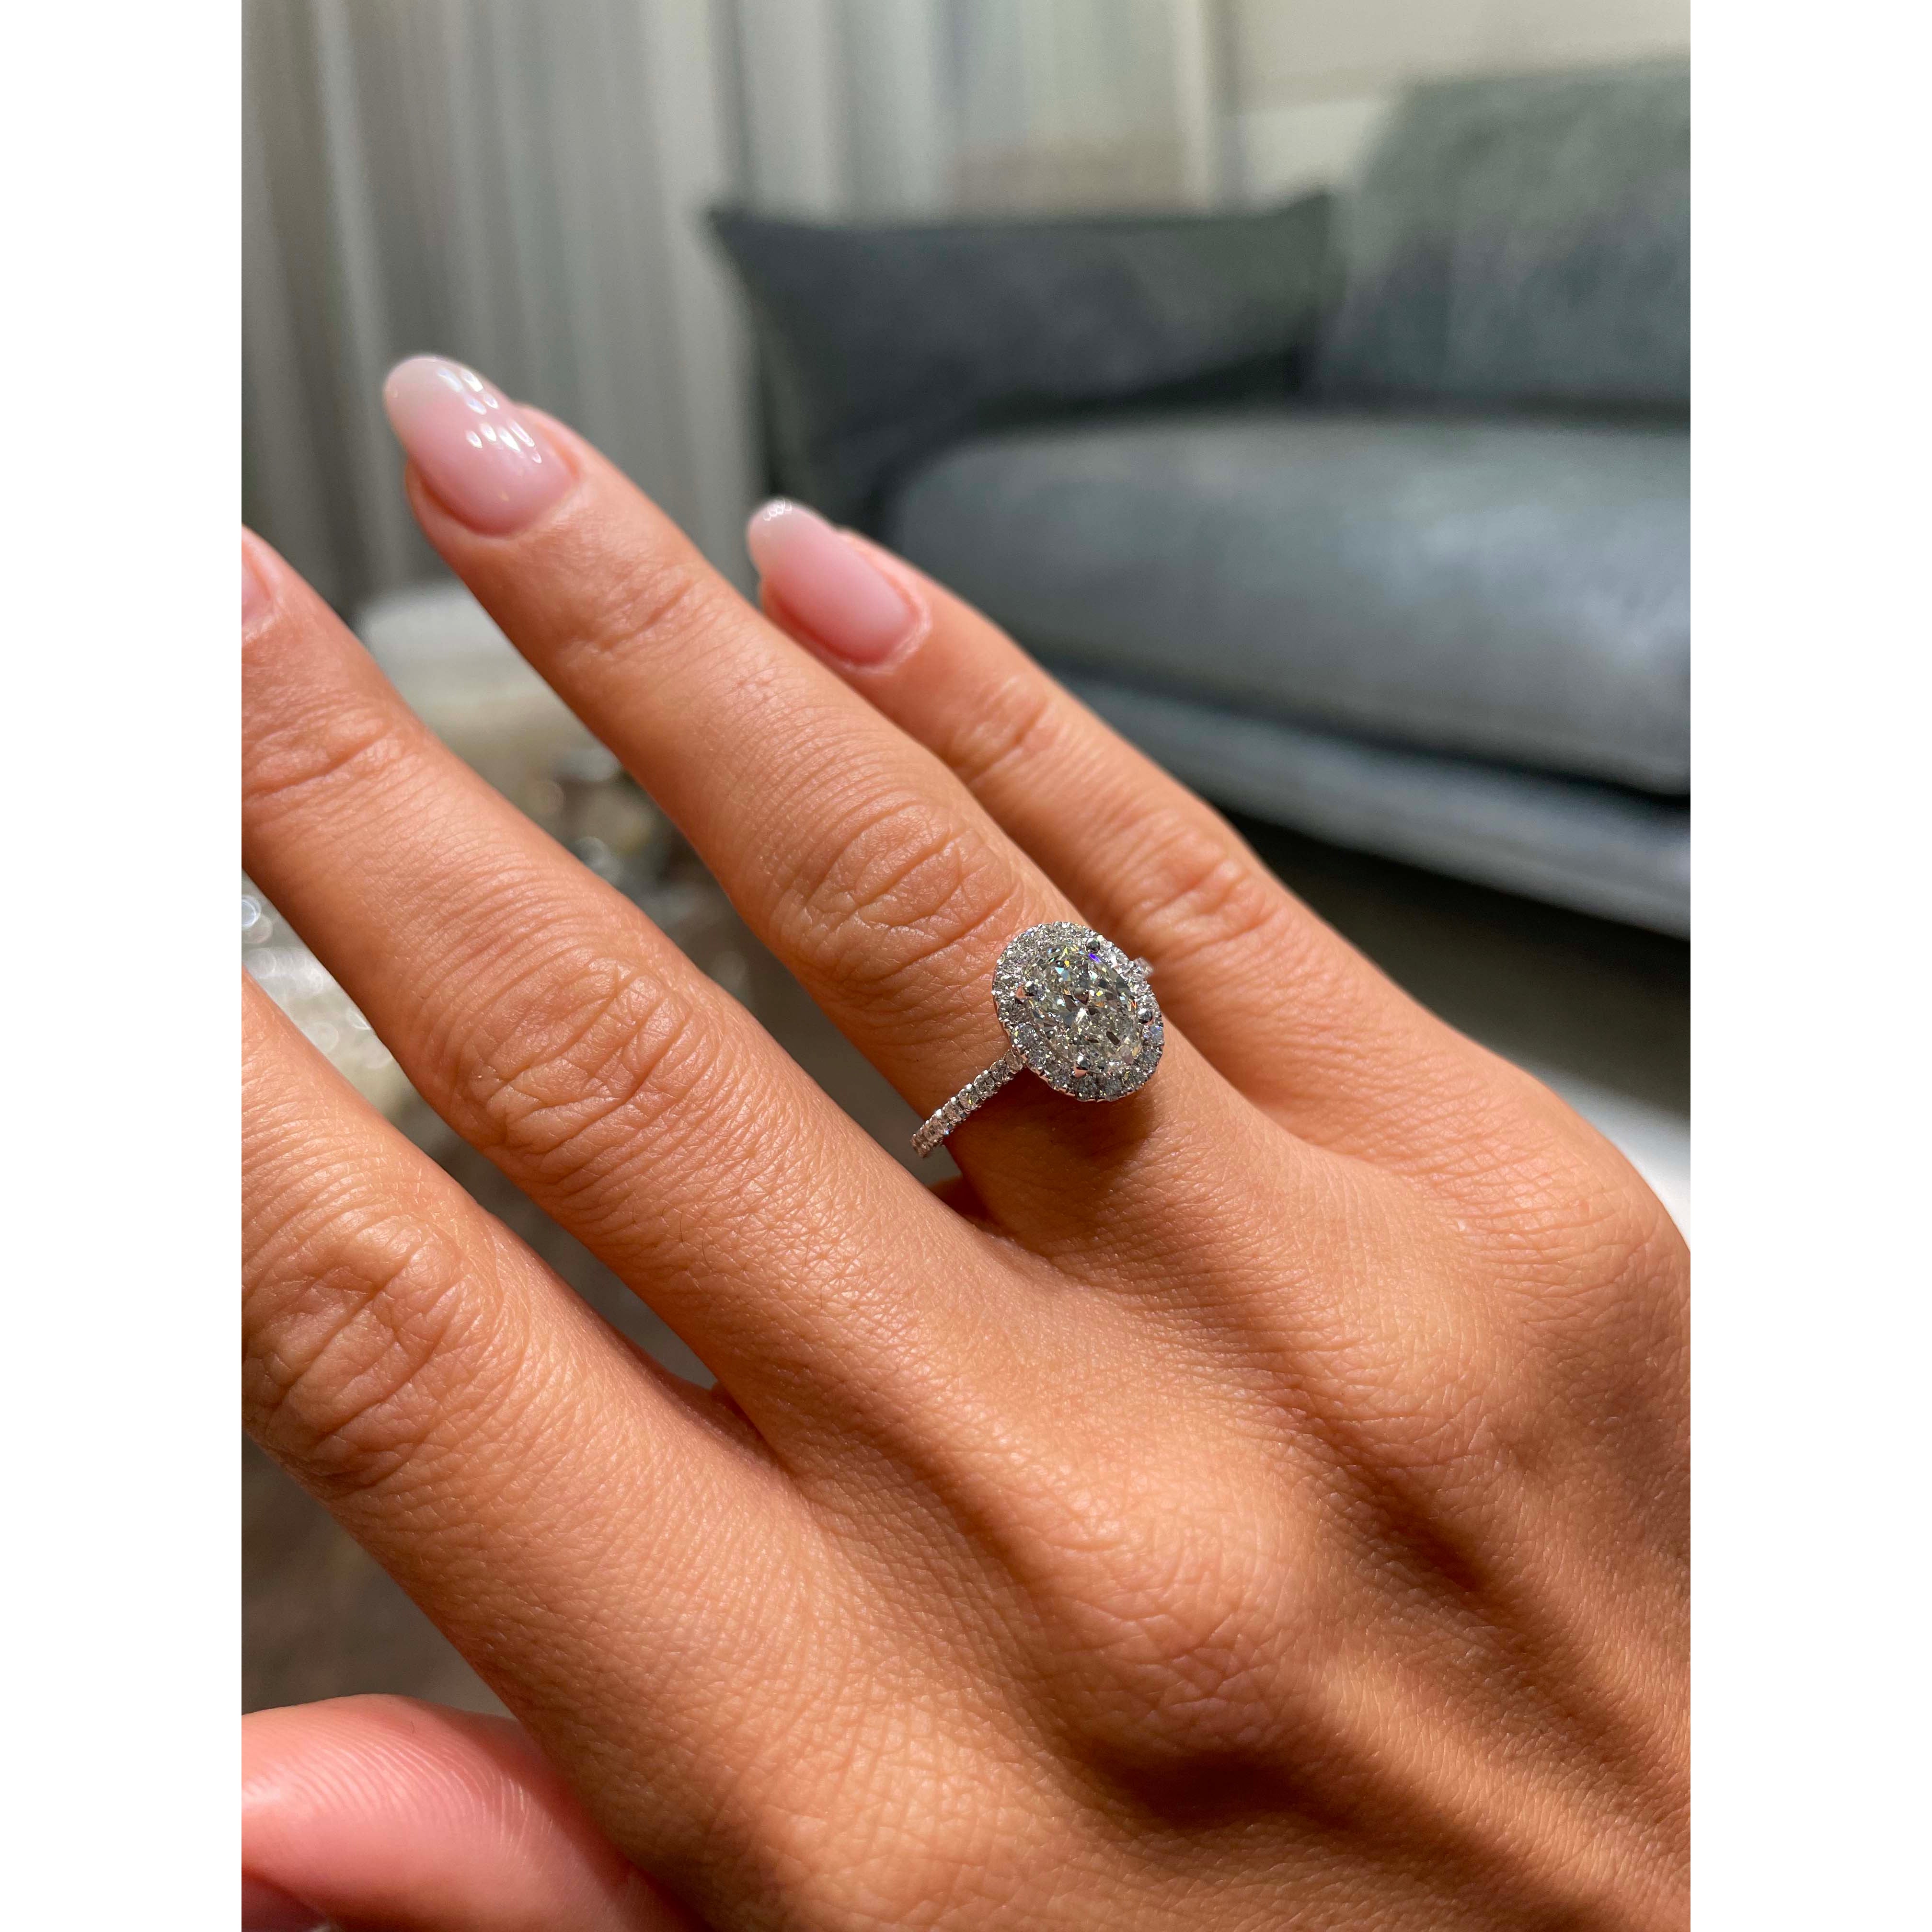 Maria Diamond Engagement Ring   (1.3 Carat) - 14K White Gold